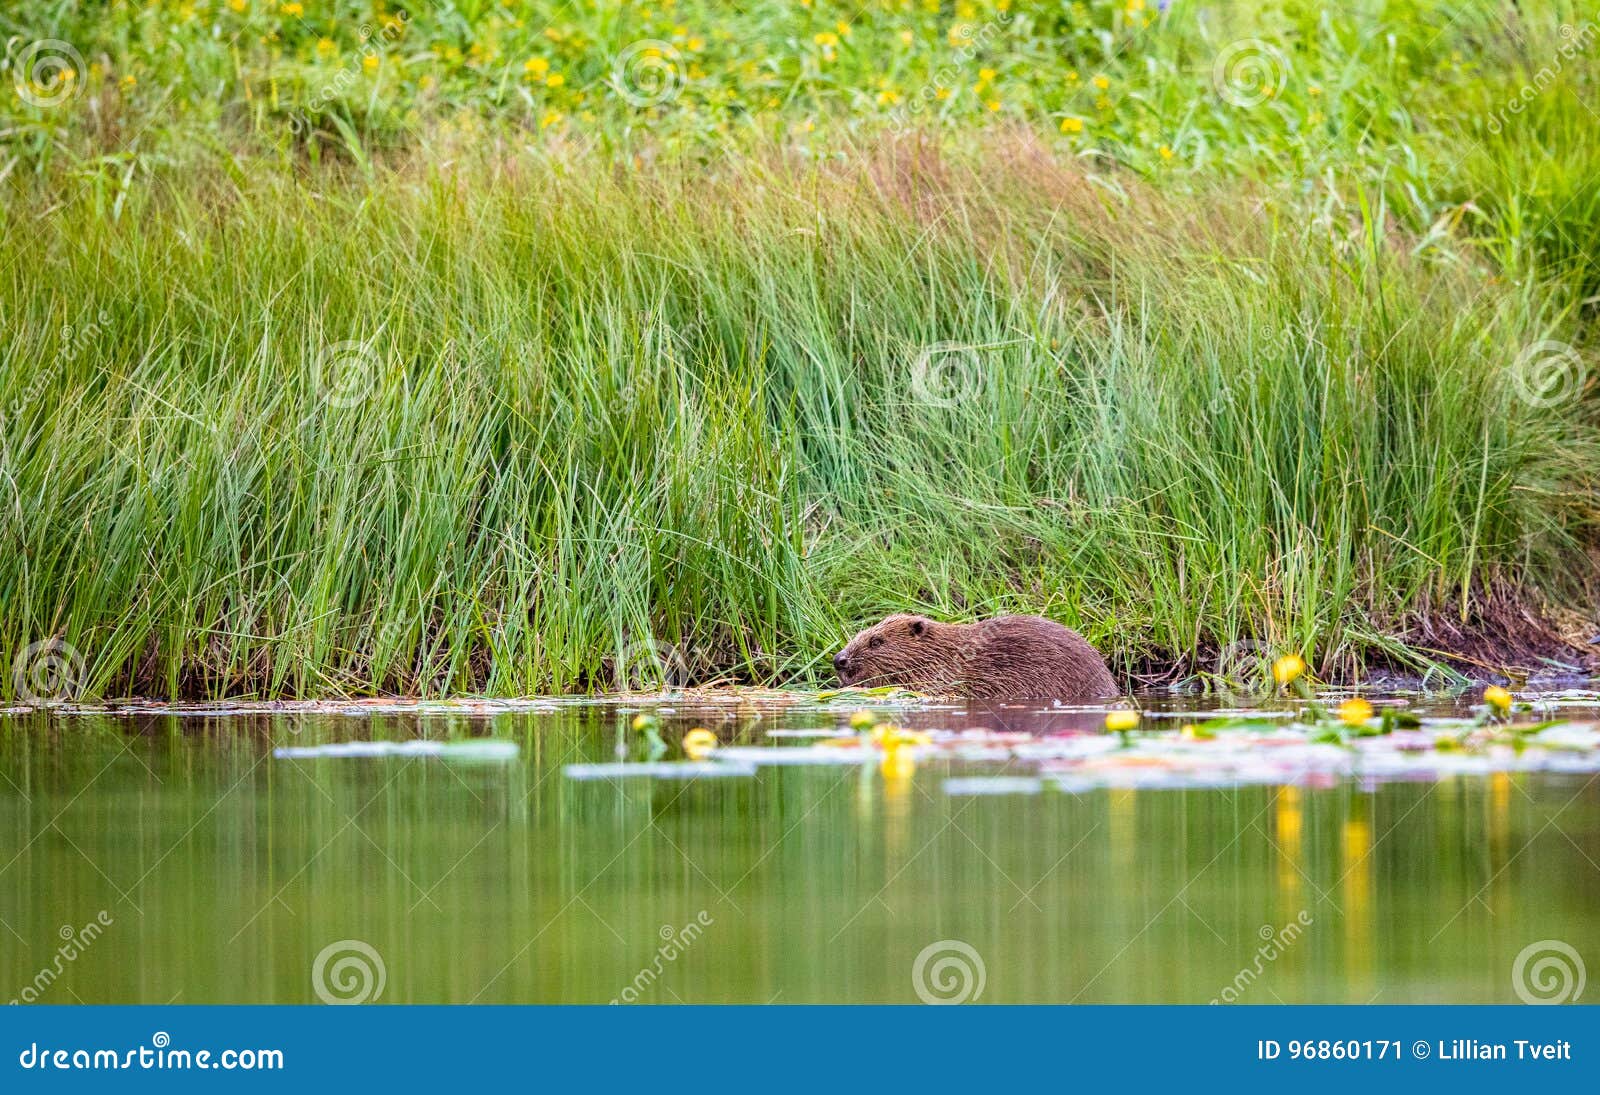 european beaver, castor fiber, sits in the river eating